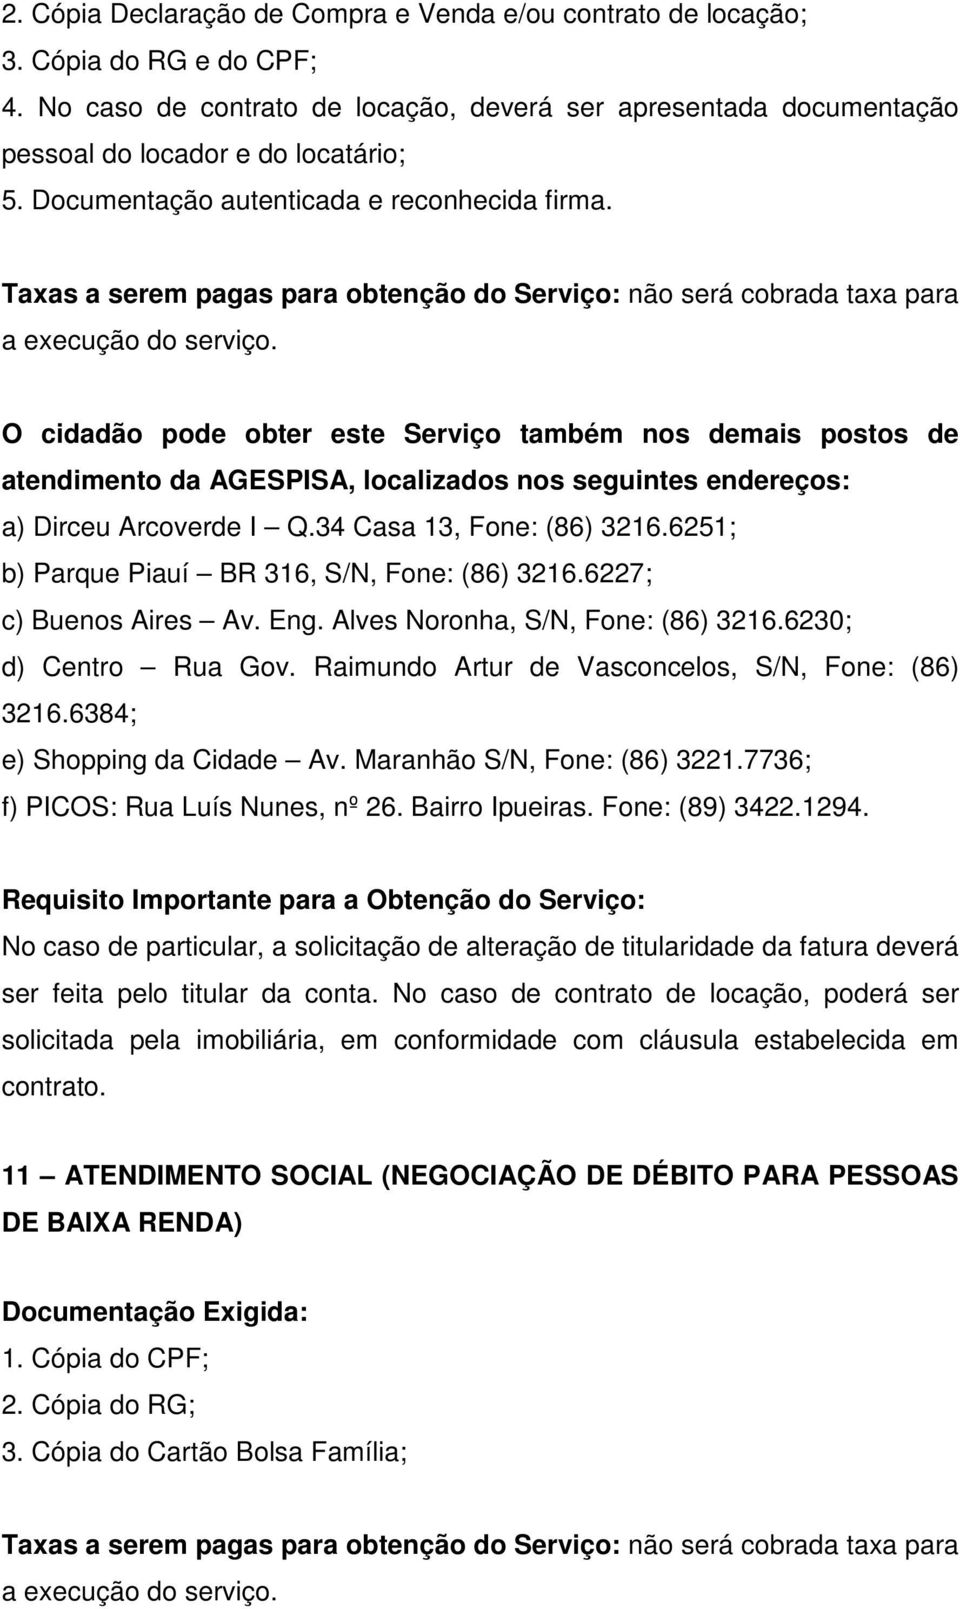 O cidadão pode obter este Serviço também nos demais postos de atendimento da AGESPISA, localizados nos seguintes endereços: a) Dirceu Arcoverde I Q.34 Casa 13, Fone: (86) 3216.